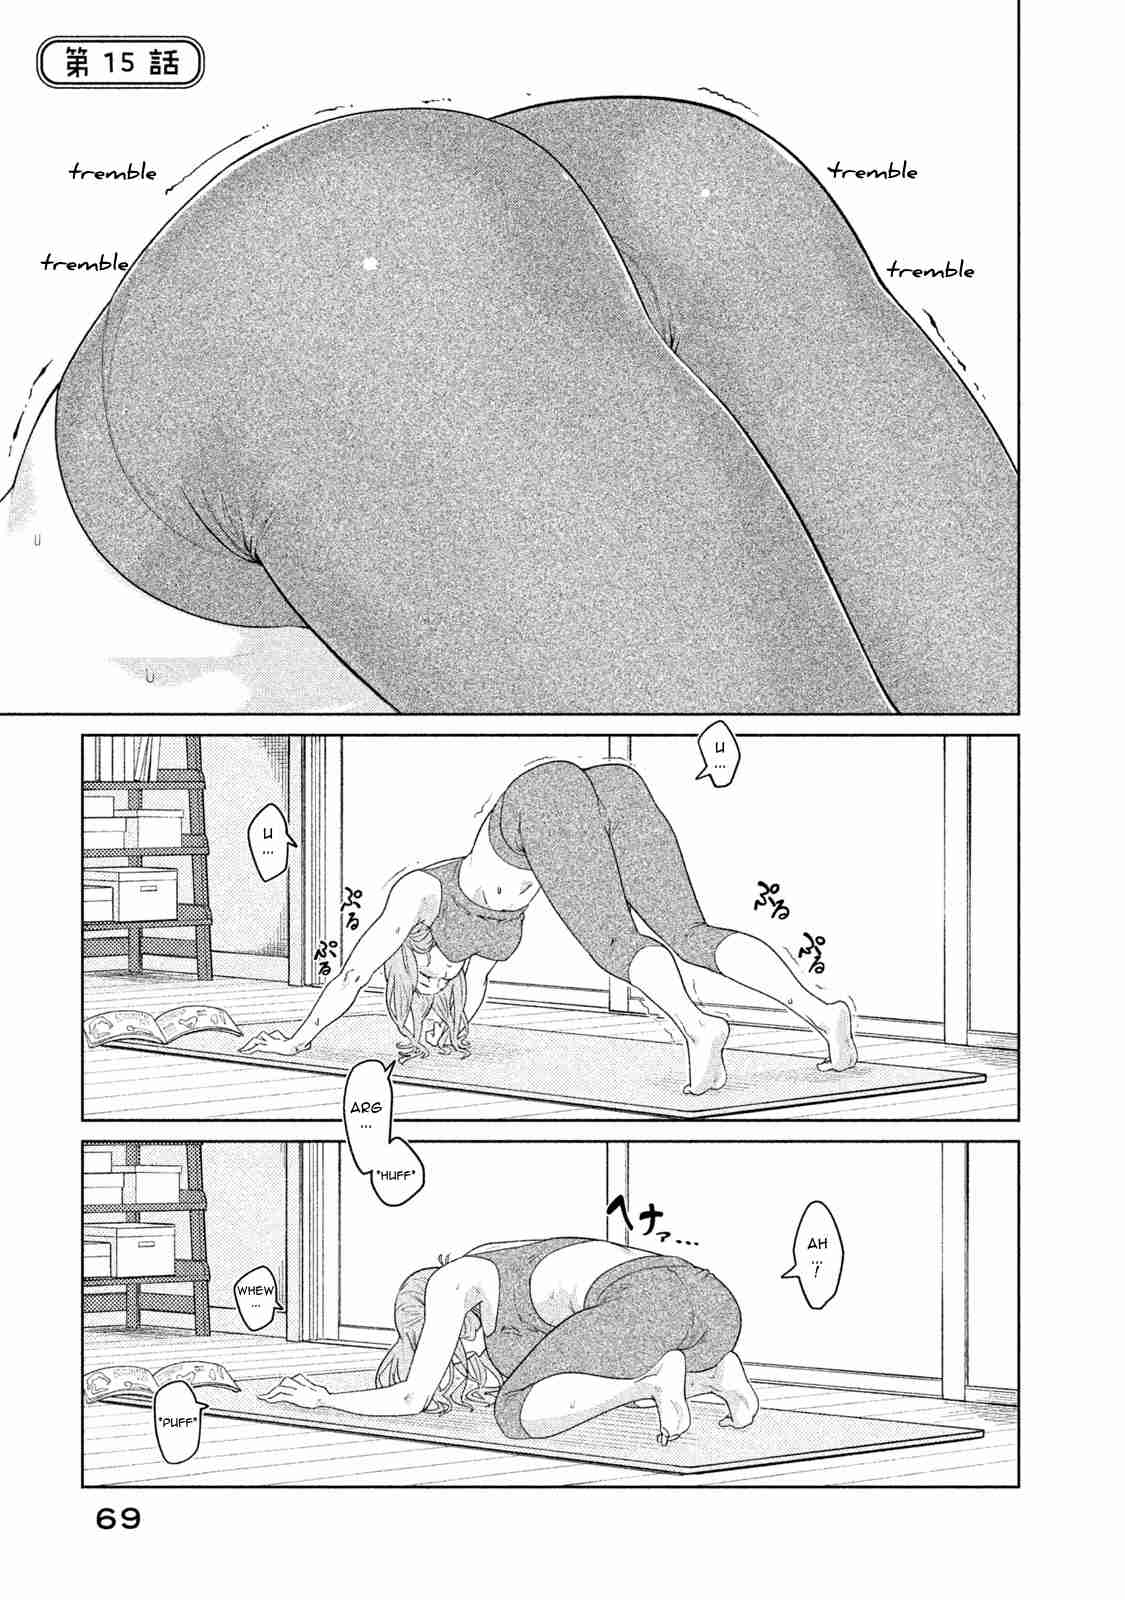 Bimajyo no Ayano san Vol. 1 Ch. 15